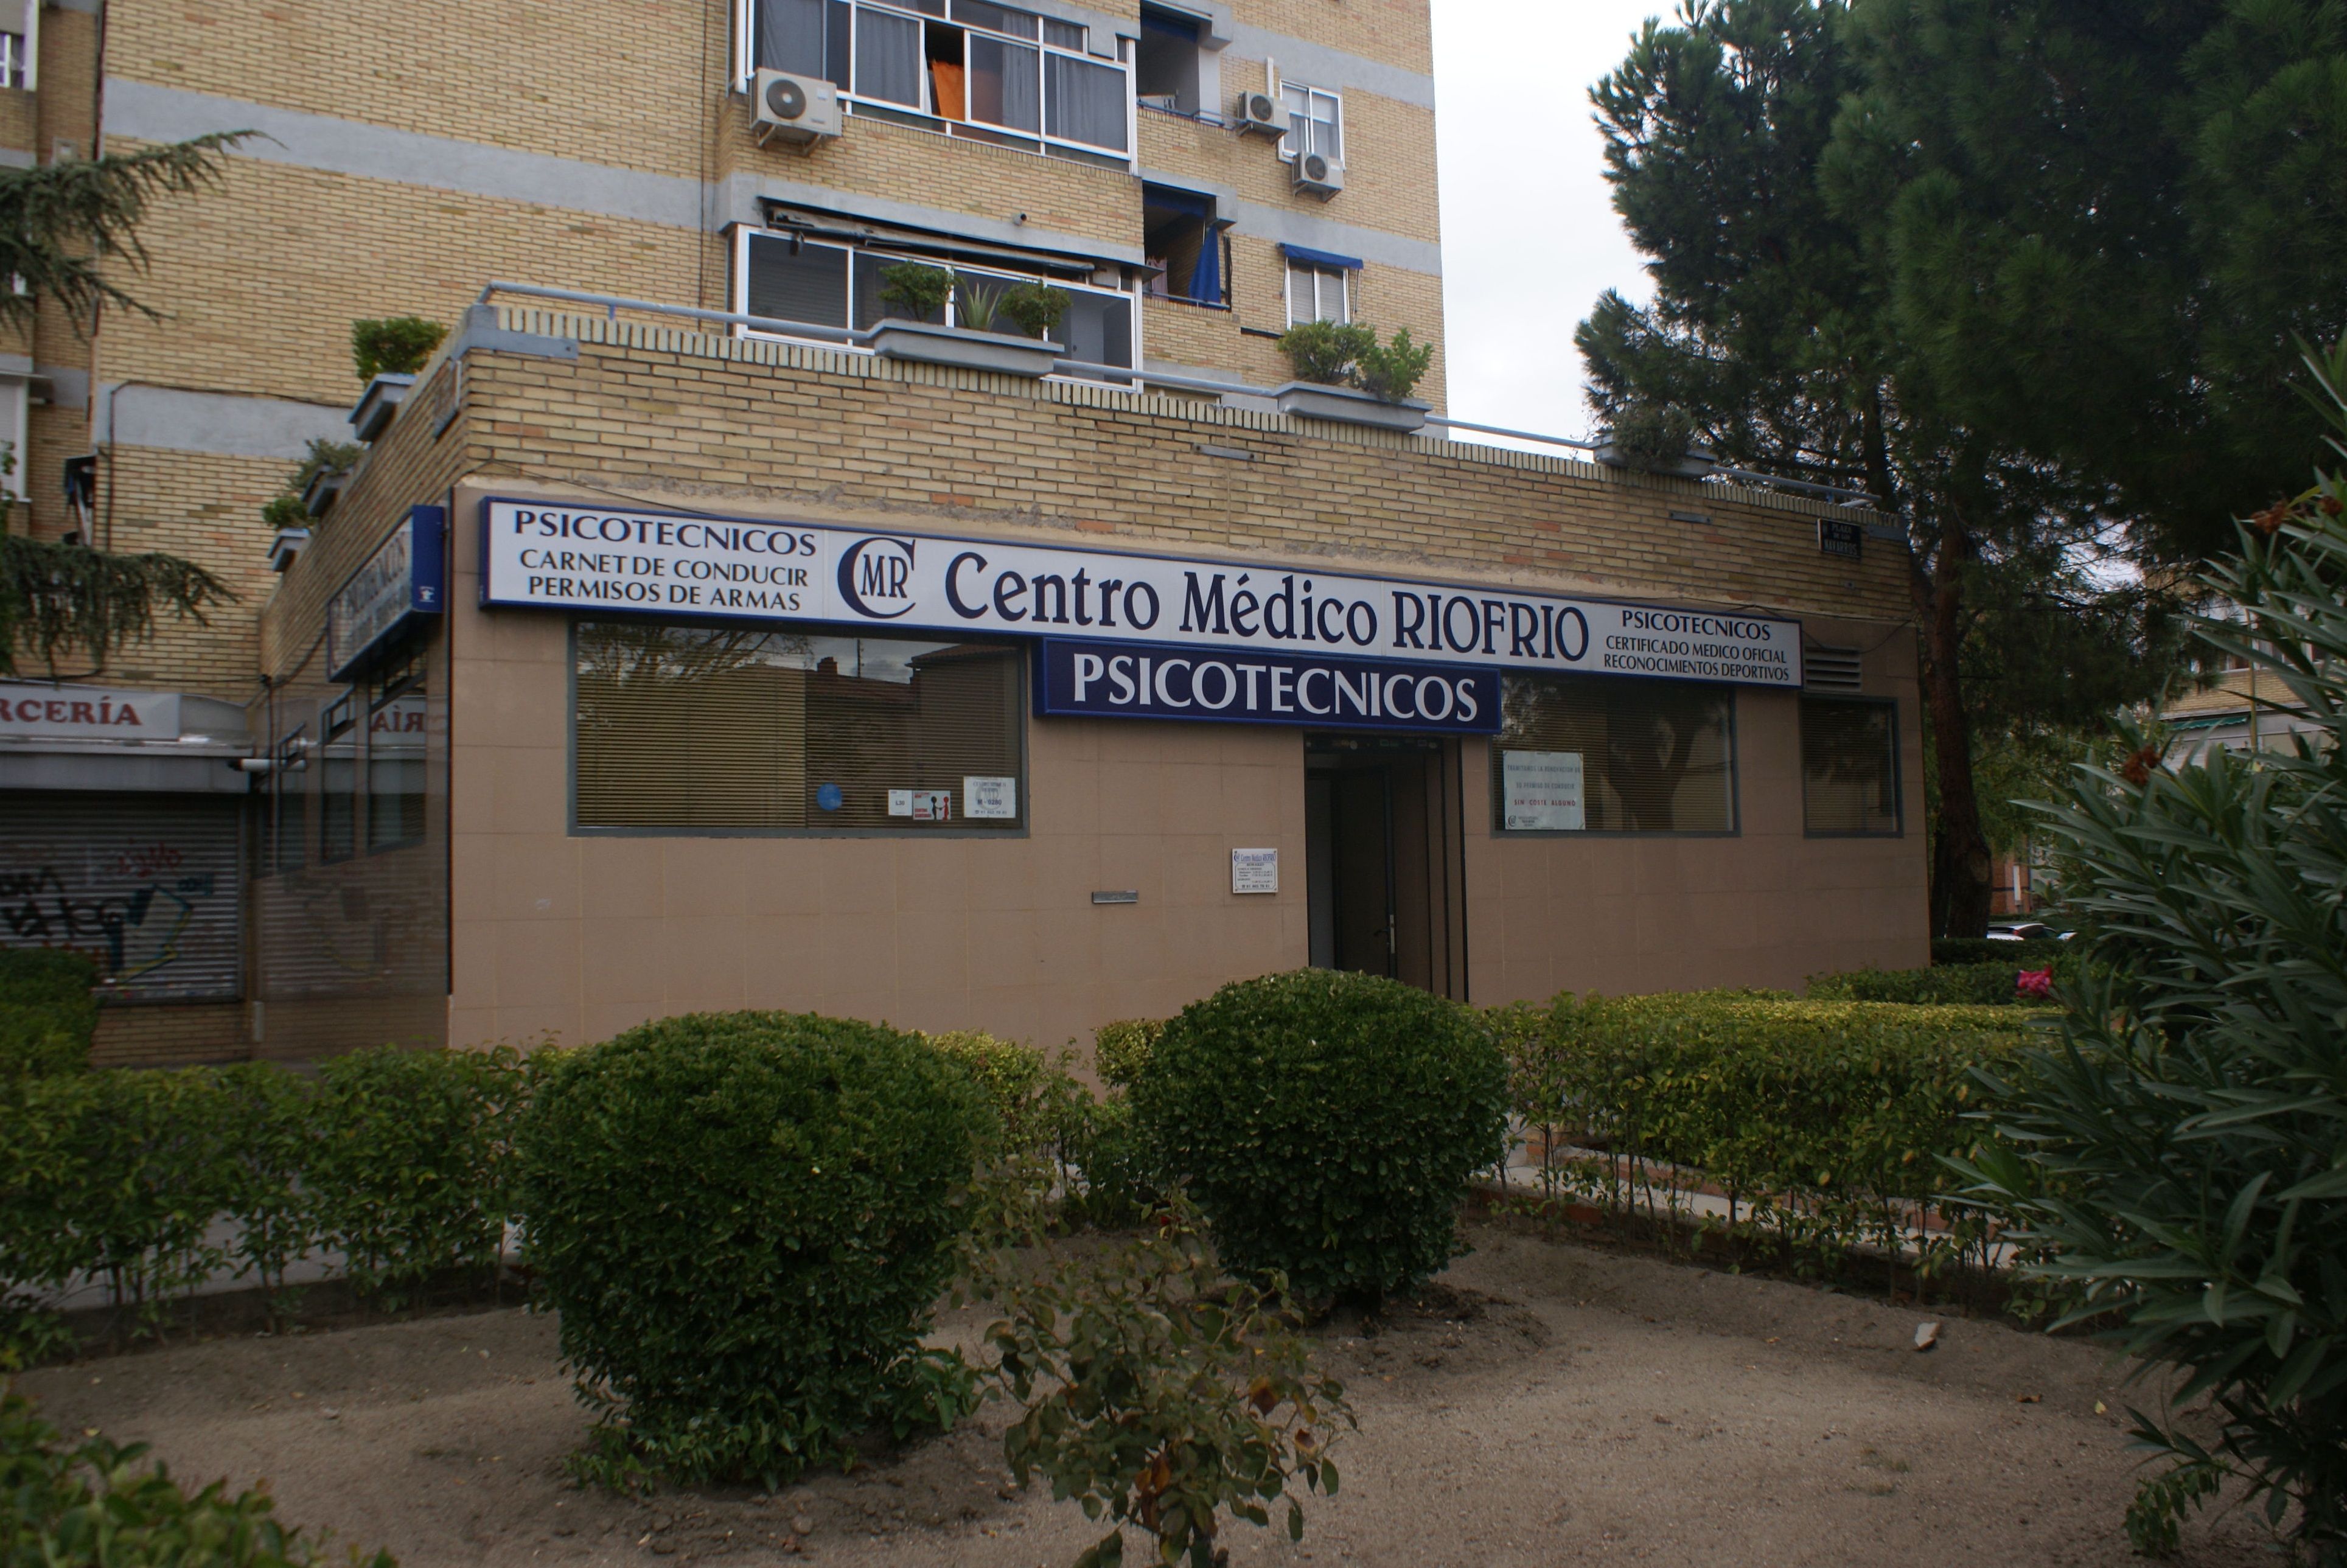 Foto 1 de Reconocimientos y certificados médicos en Madrid | Centro Médico Riofrío